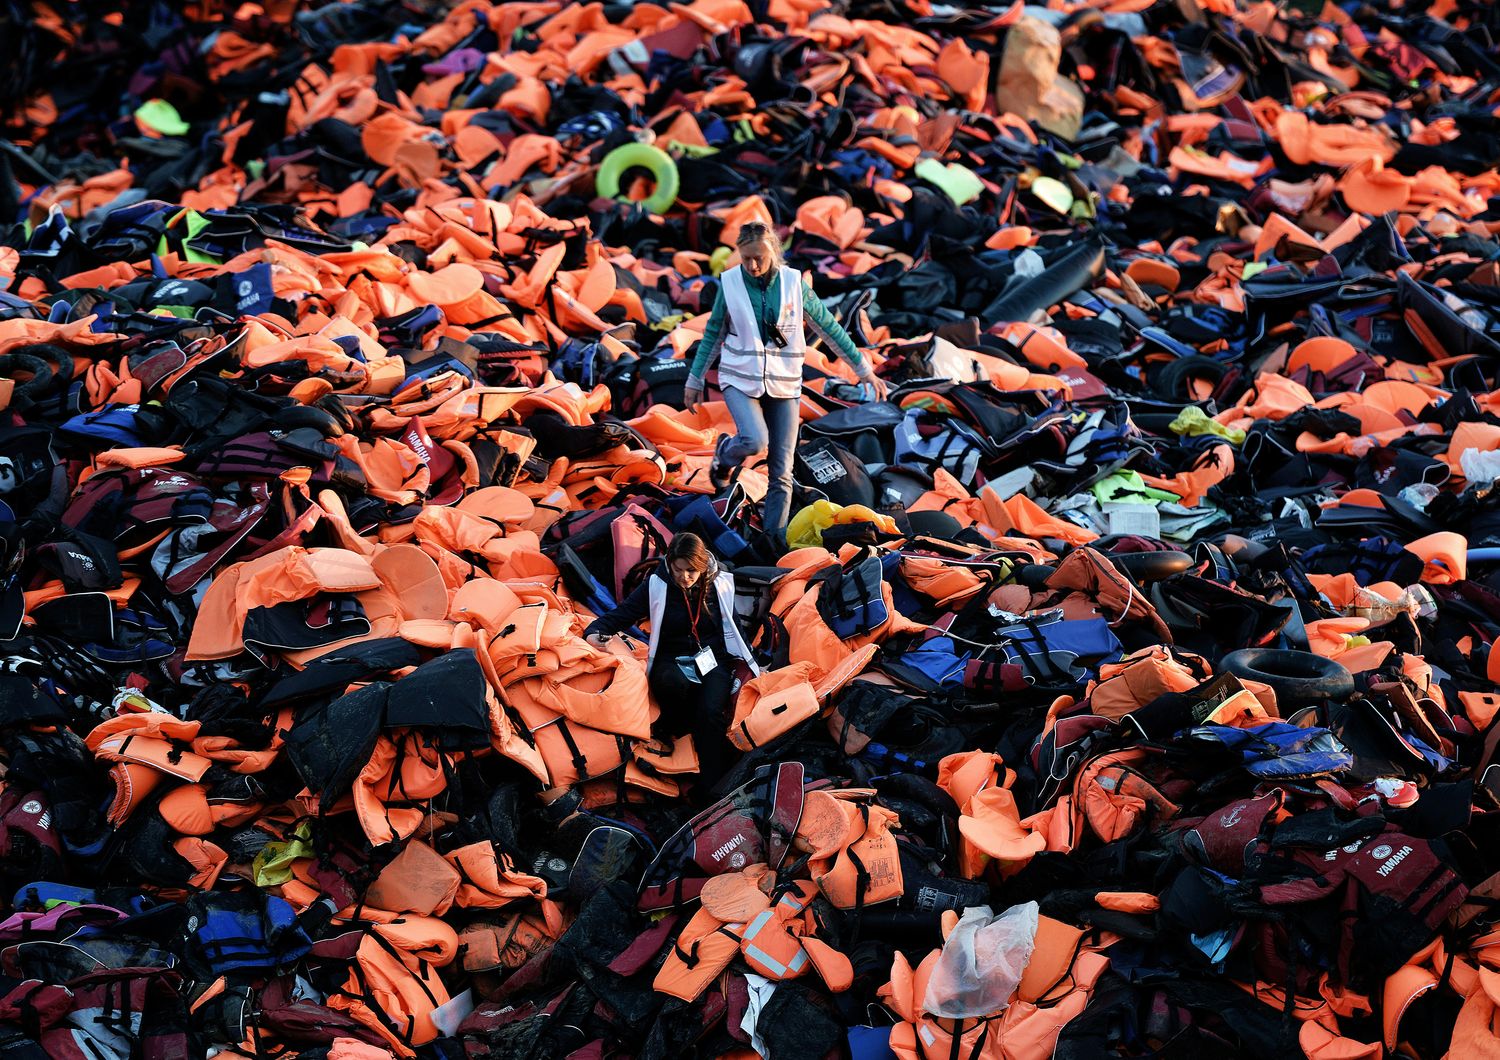 &nbsp;Volontari camminano su un mucchio di giubbotti di salvataggio lasciati da rifugiati e migranti arrivatinell'isola greca di Lesbo dopo aver attraversato il mare Egeo dalla Turchia (3 dicembre 2015)